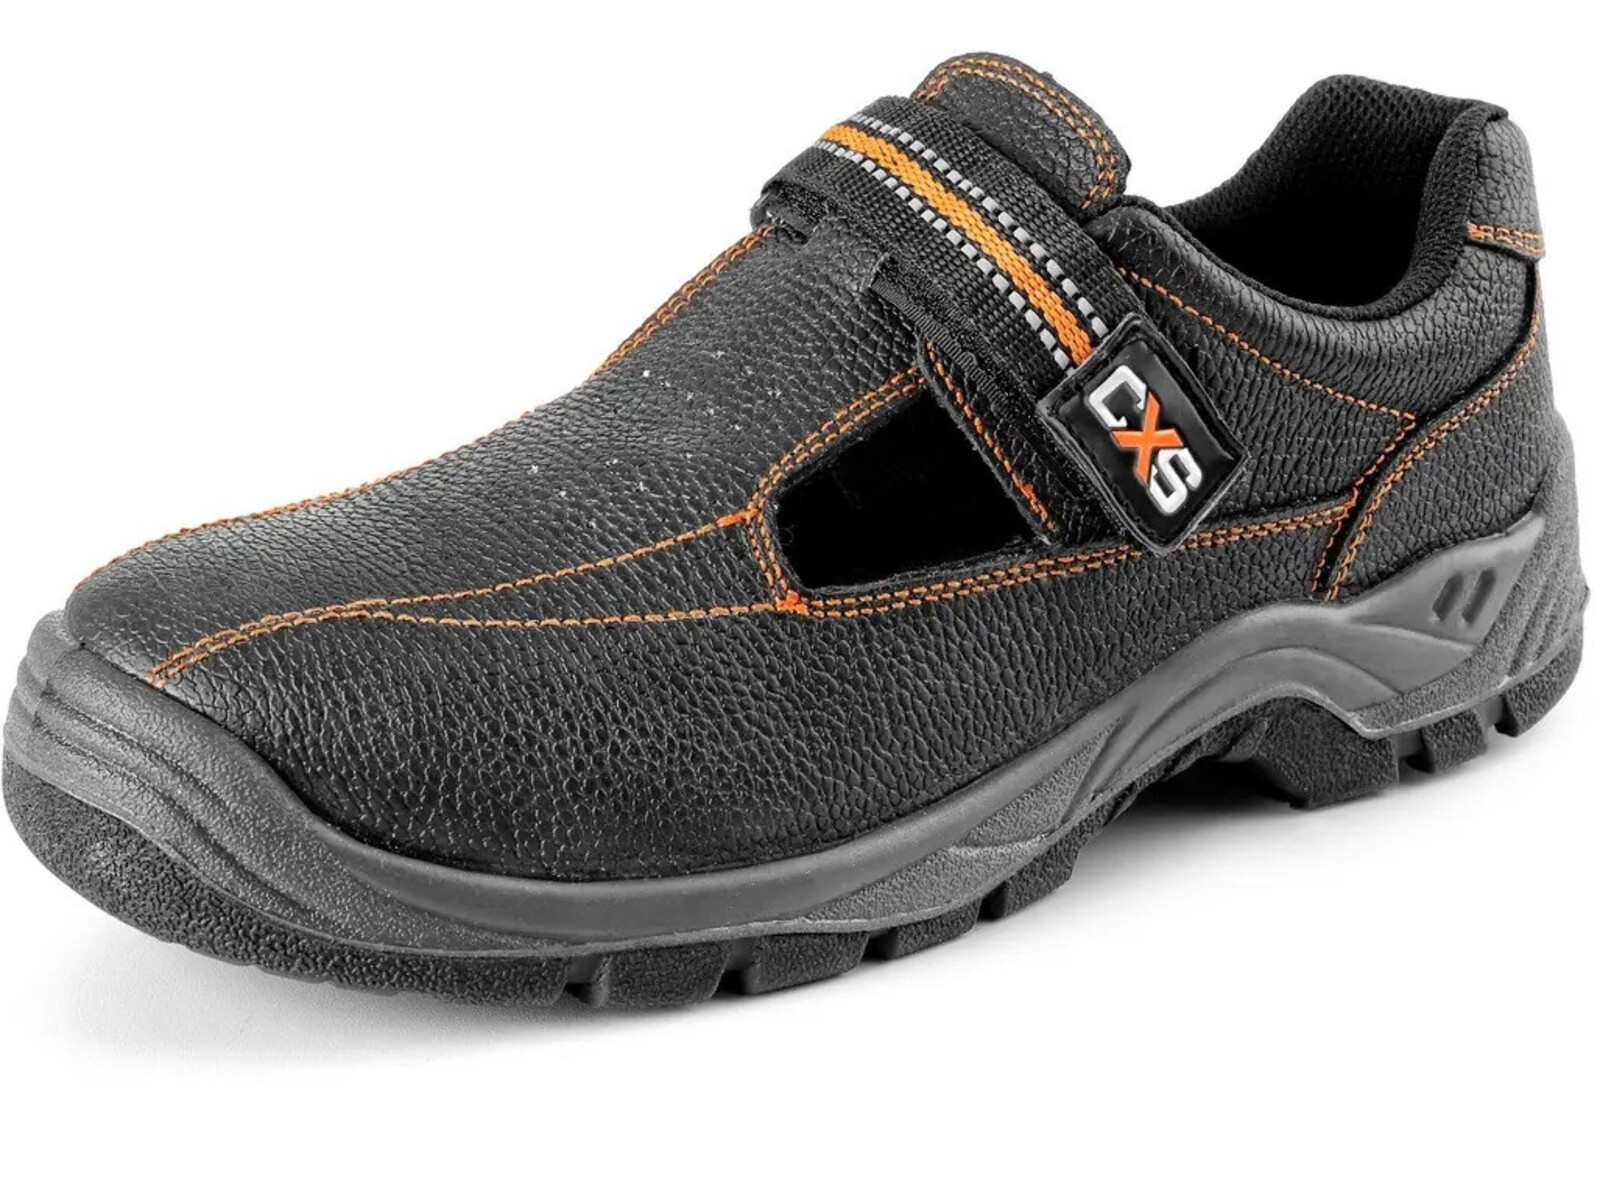 Pracovné sandále CXS Stone Nefrit O1 FO SRC - veľkosť: 46, farba: čierna/oranžová